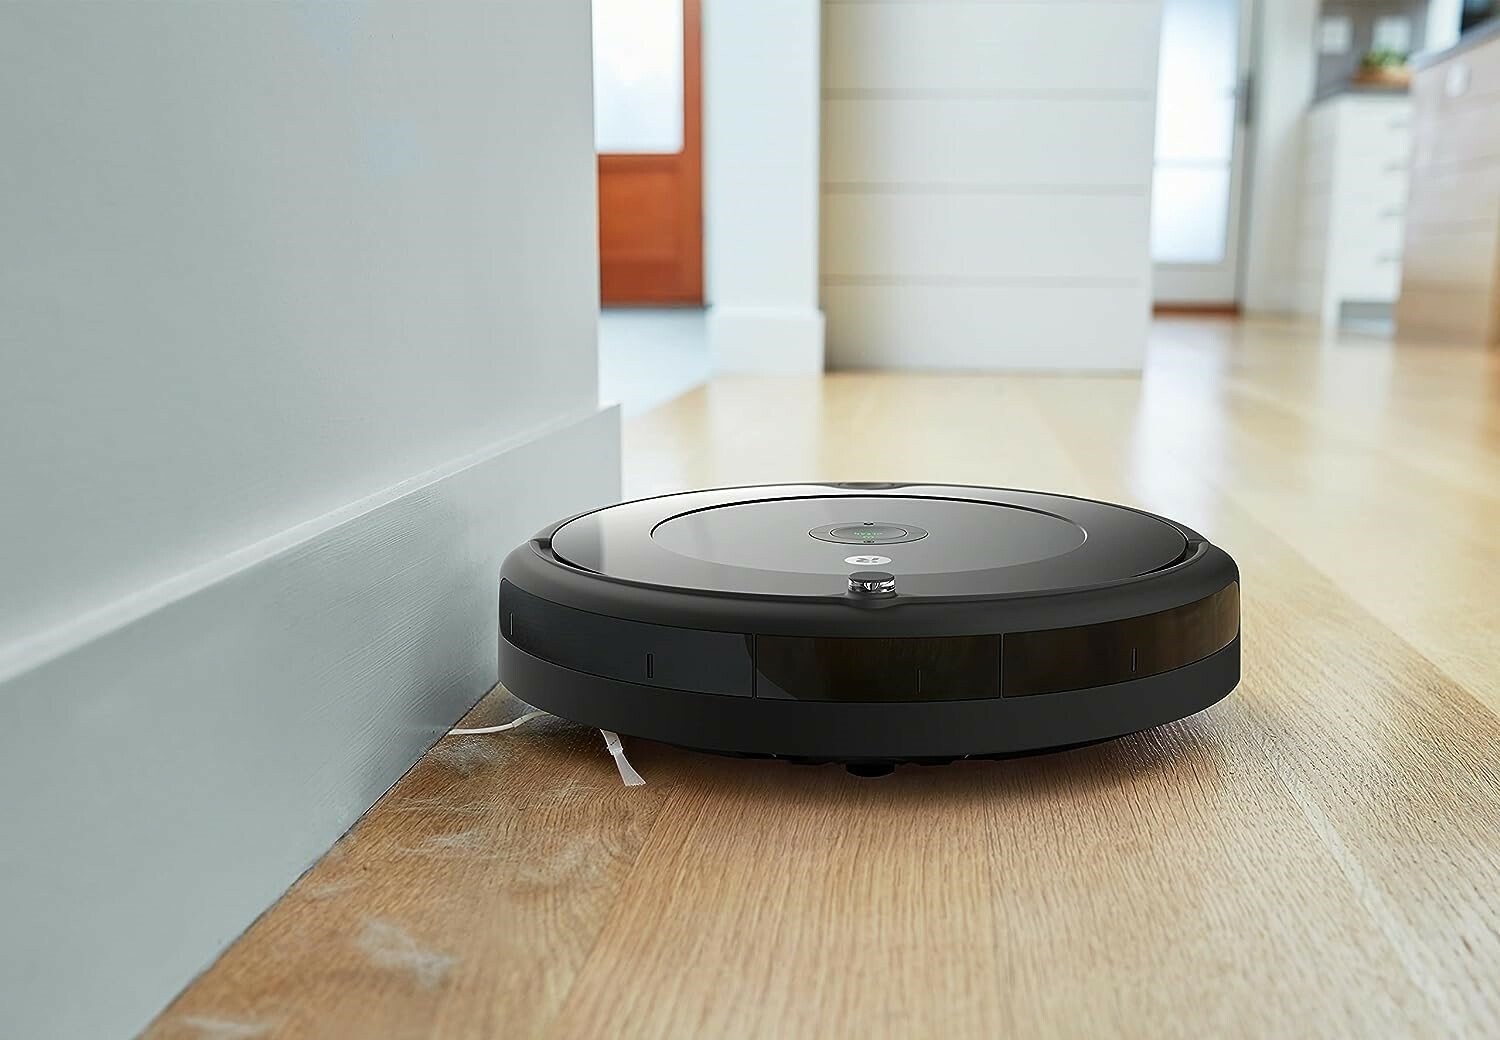 The iRobot Roomba 694 robot vacuum sweeping up pet hair